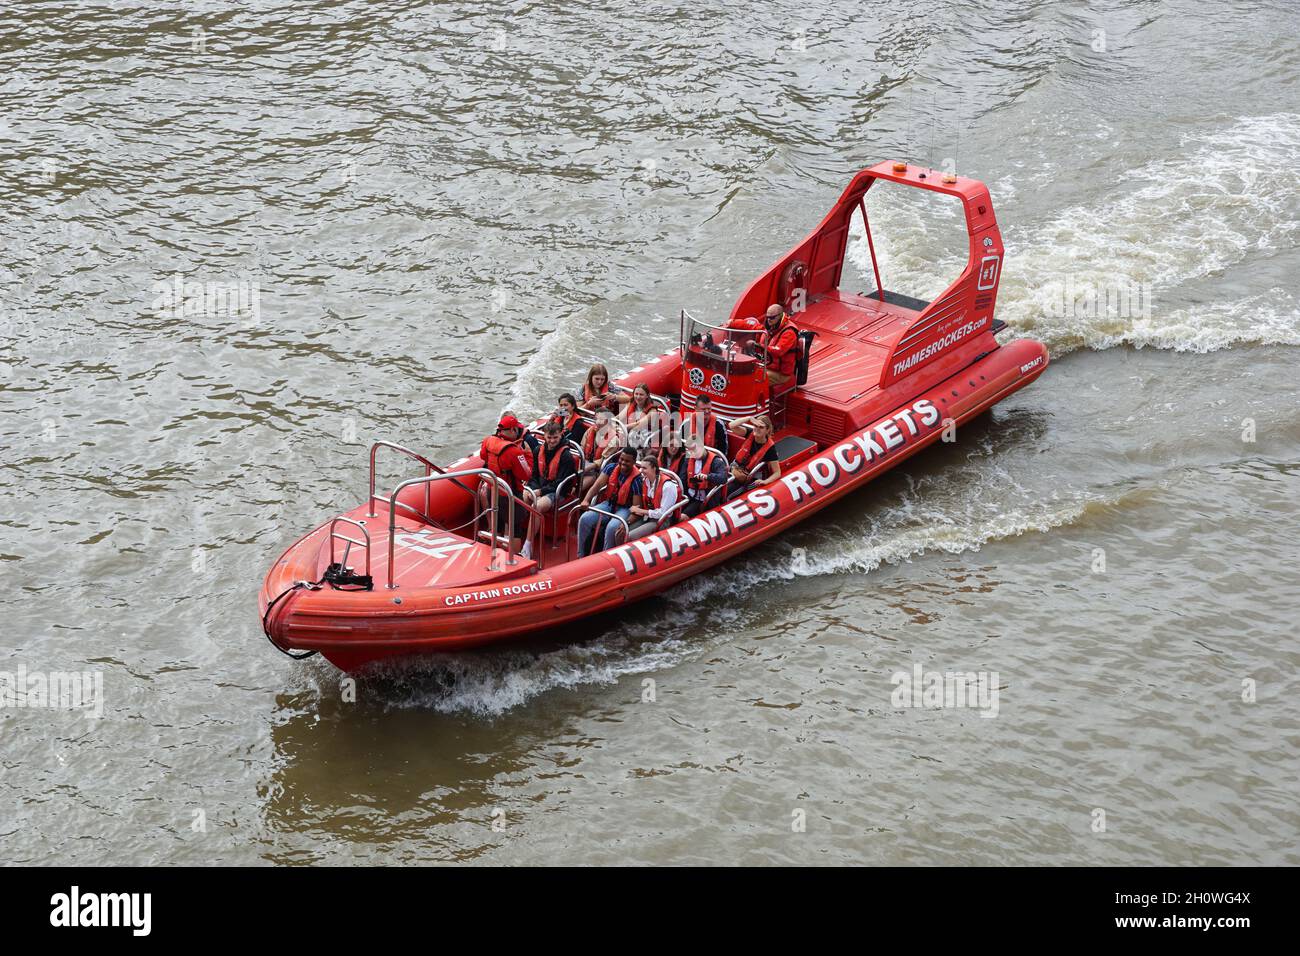 Thames lance un bateau gonflable rigide à grande vitesse (RIB) avec des touristes sur la Tamise, Londres Angleterre Royaume-Uni Banque D'Images